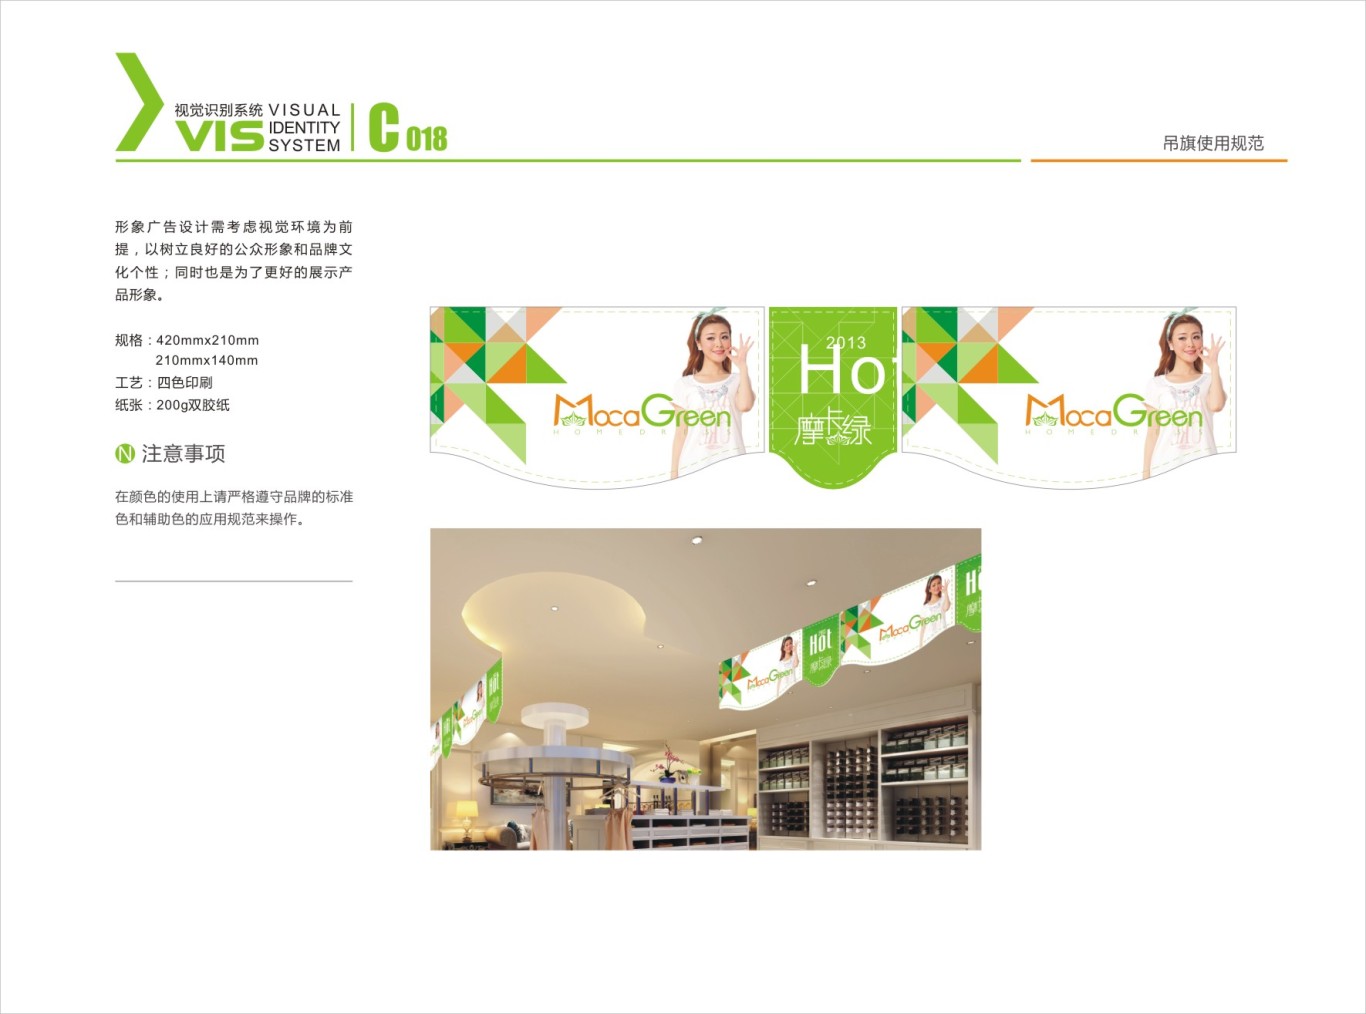 广州摩卡绿服饰-VIS视觉识别系统图16